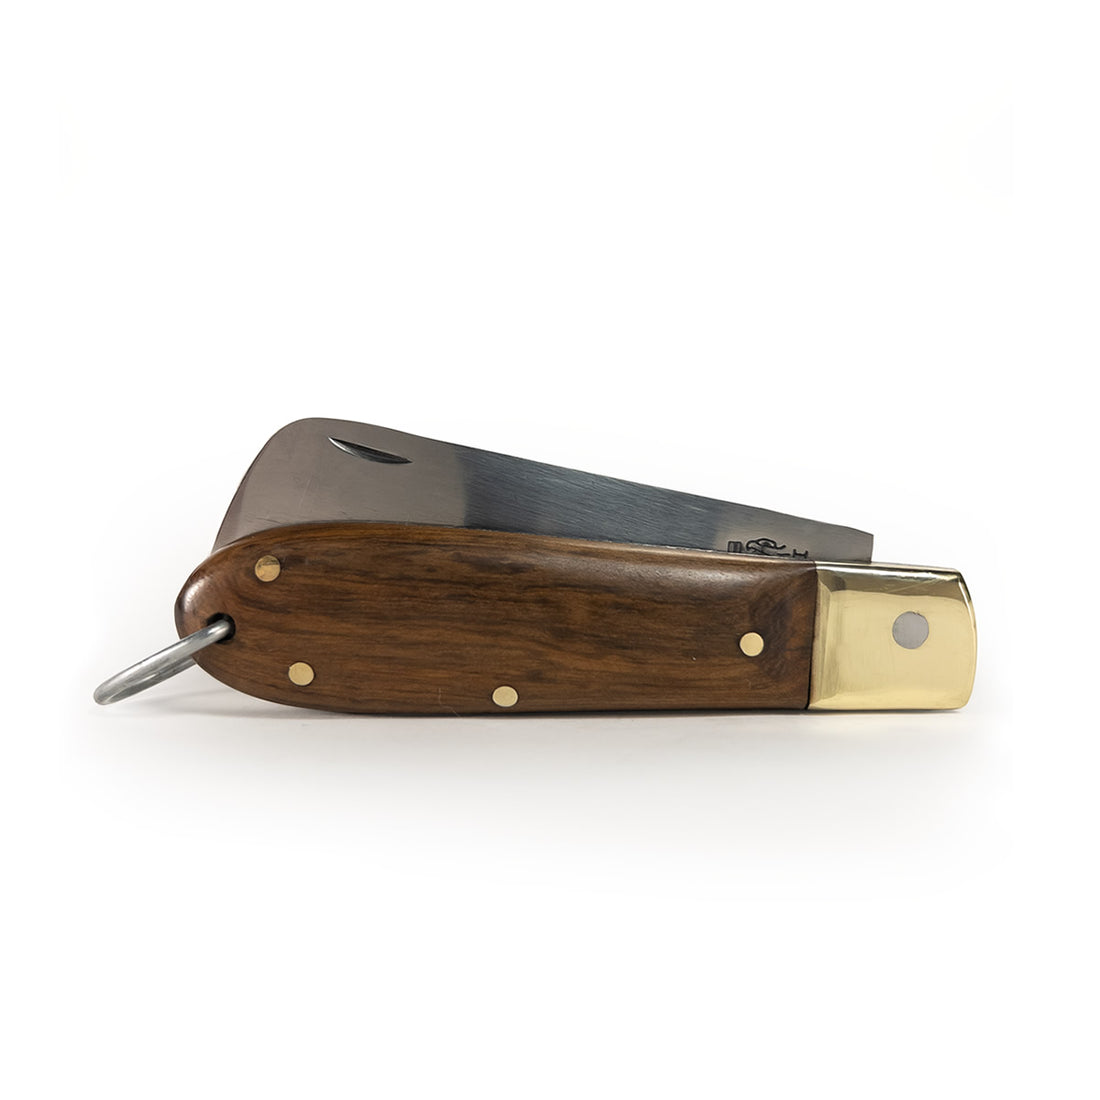 Canivete artesanal modelo Flow cabo em madeira e lâmina em aço inox. Canivete tradicional.